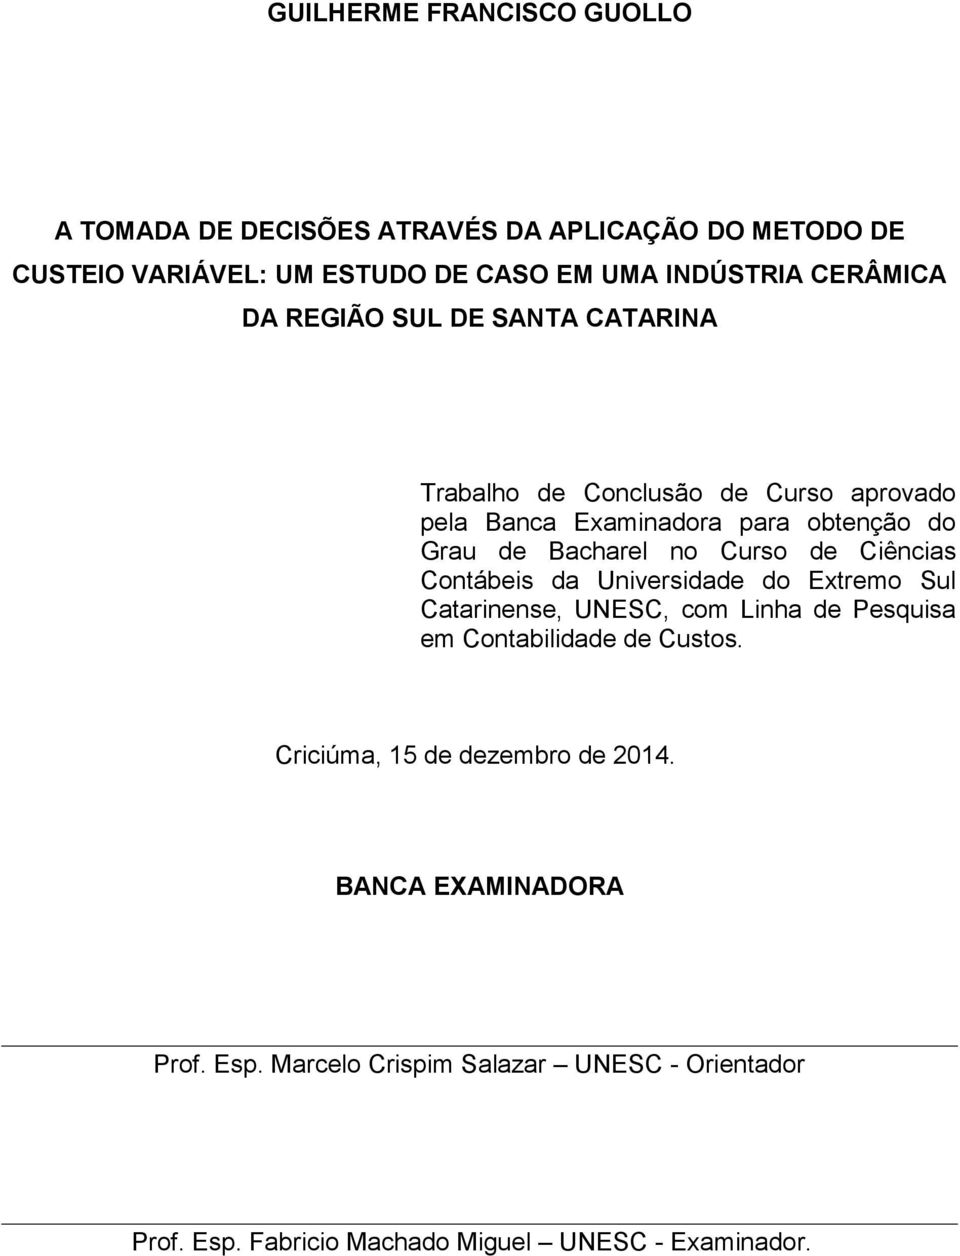 Curso de Ciências Contábeis da Universidade do Extremo Sul Catarinense, UNESC, com Linha de Pesquisa em Contabilidade de Custos.